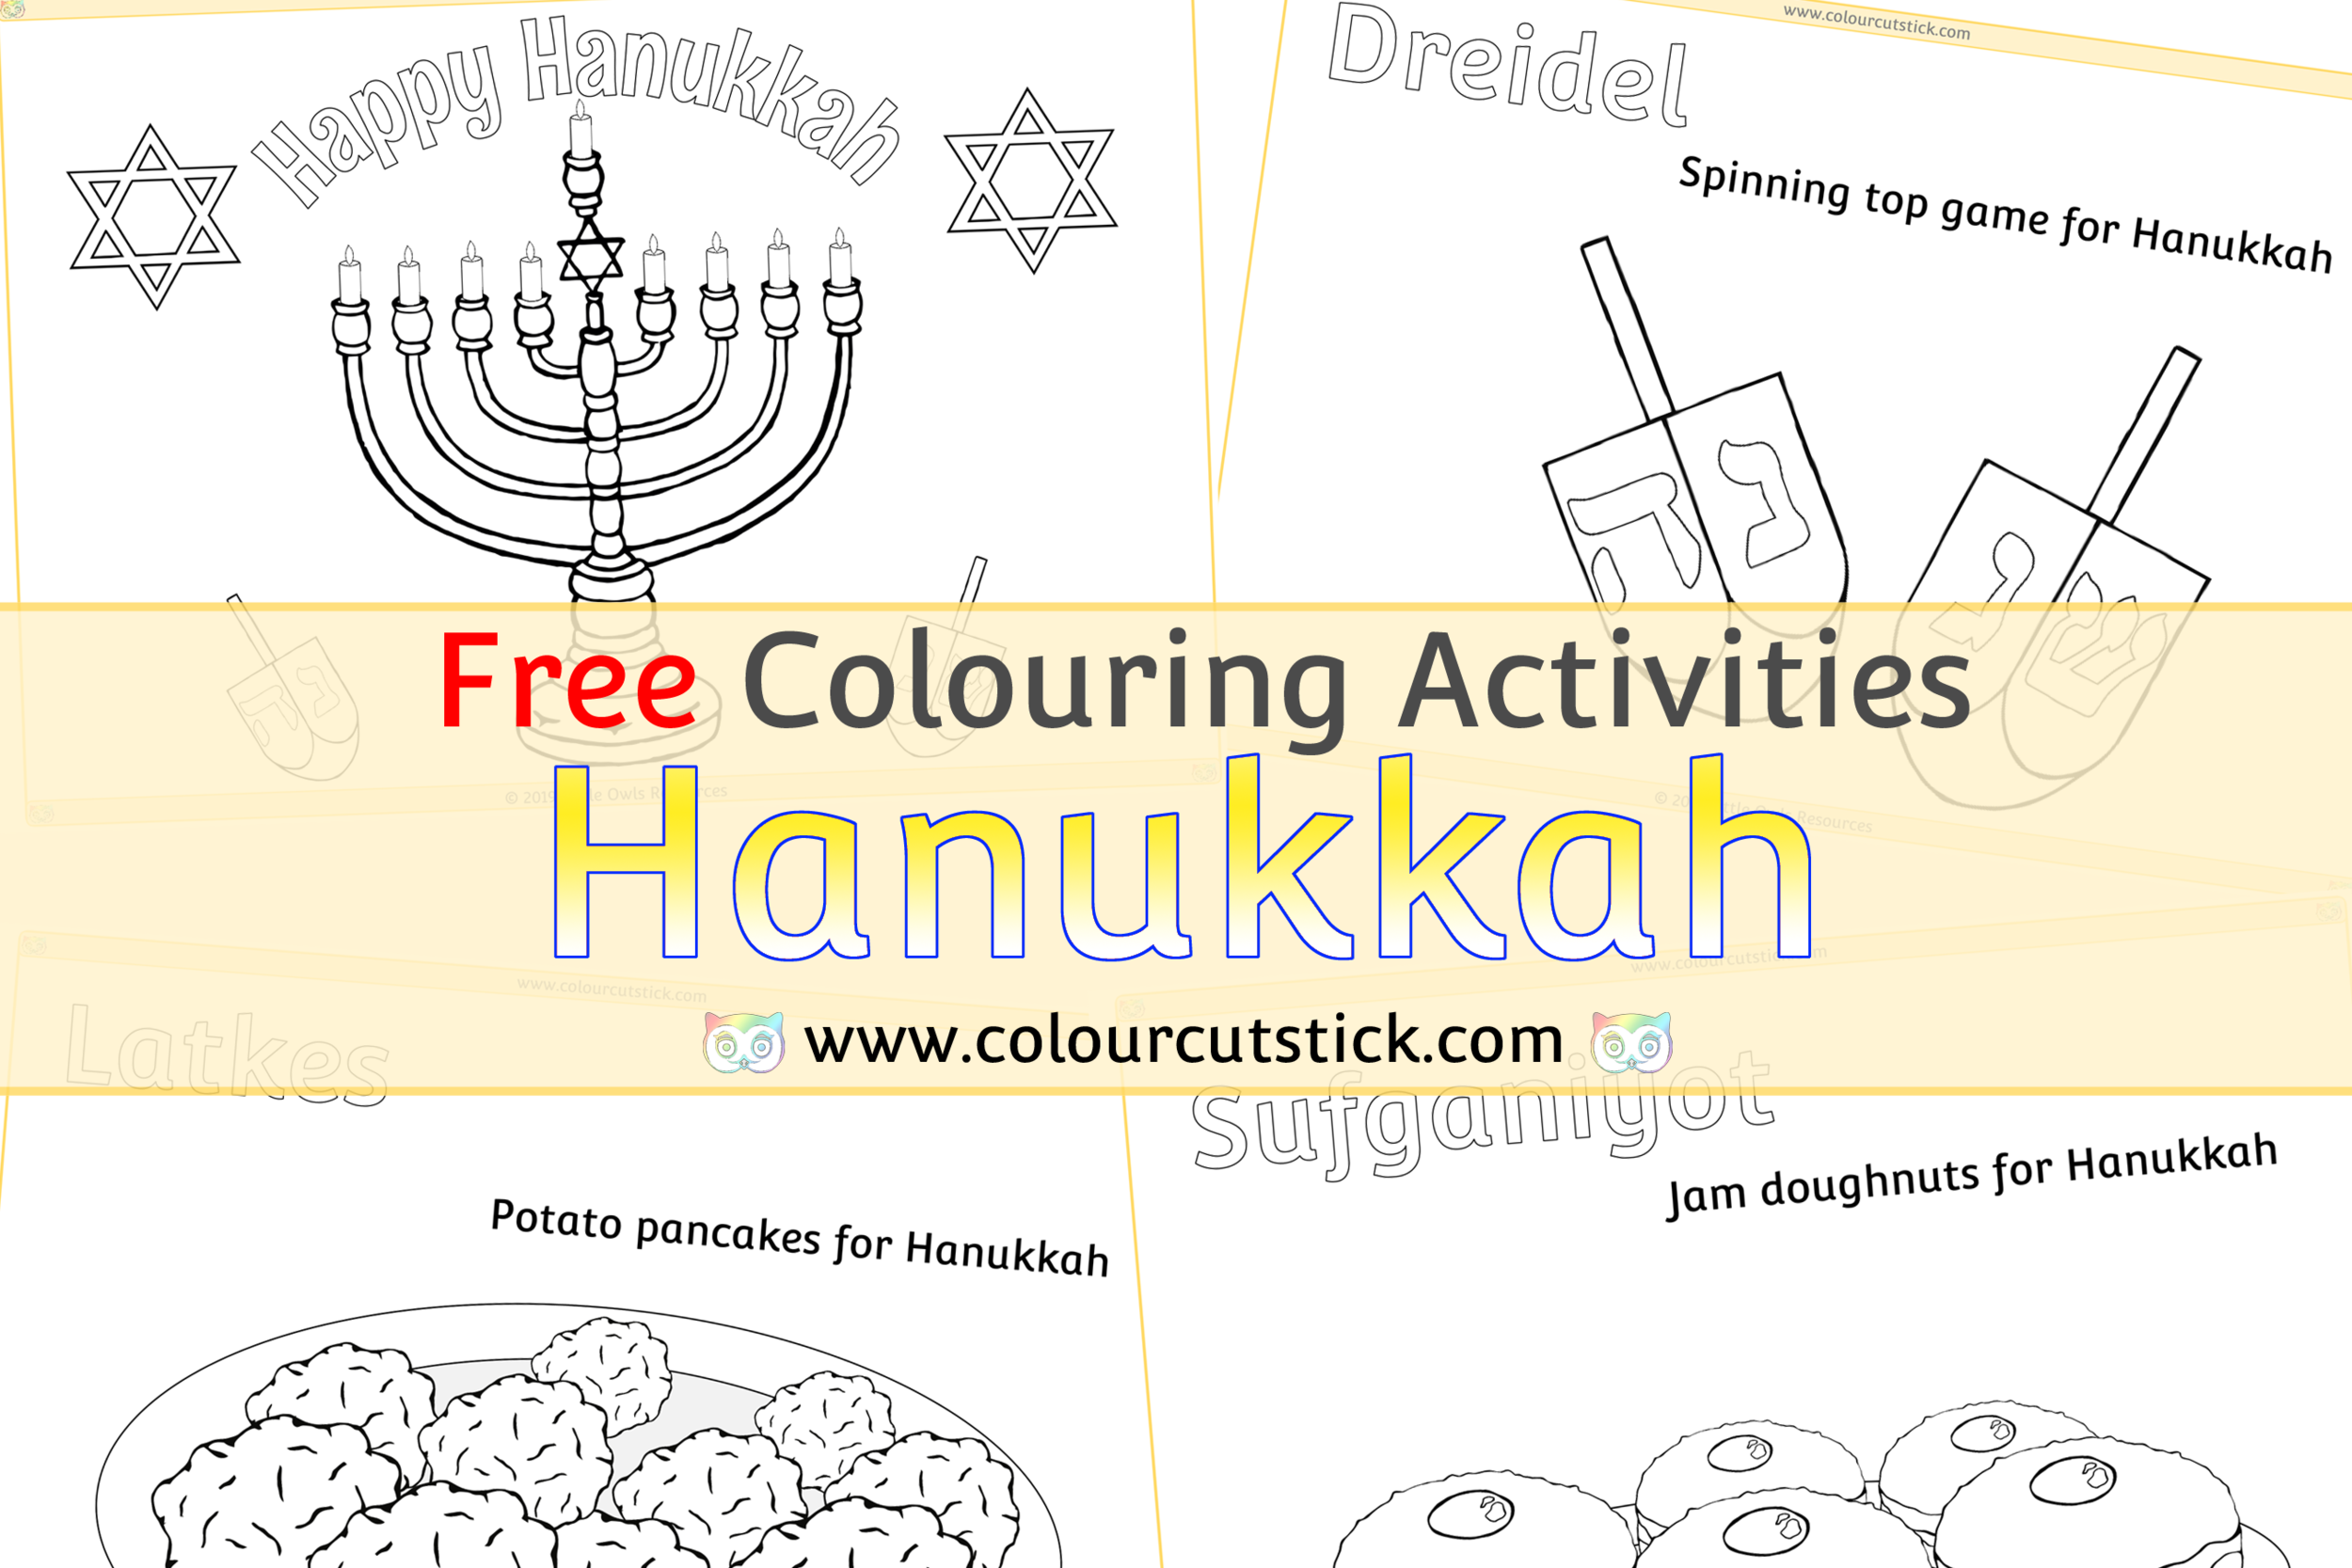 Free hanukkahchanukah colouringcoloring pages â colour cut stick